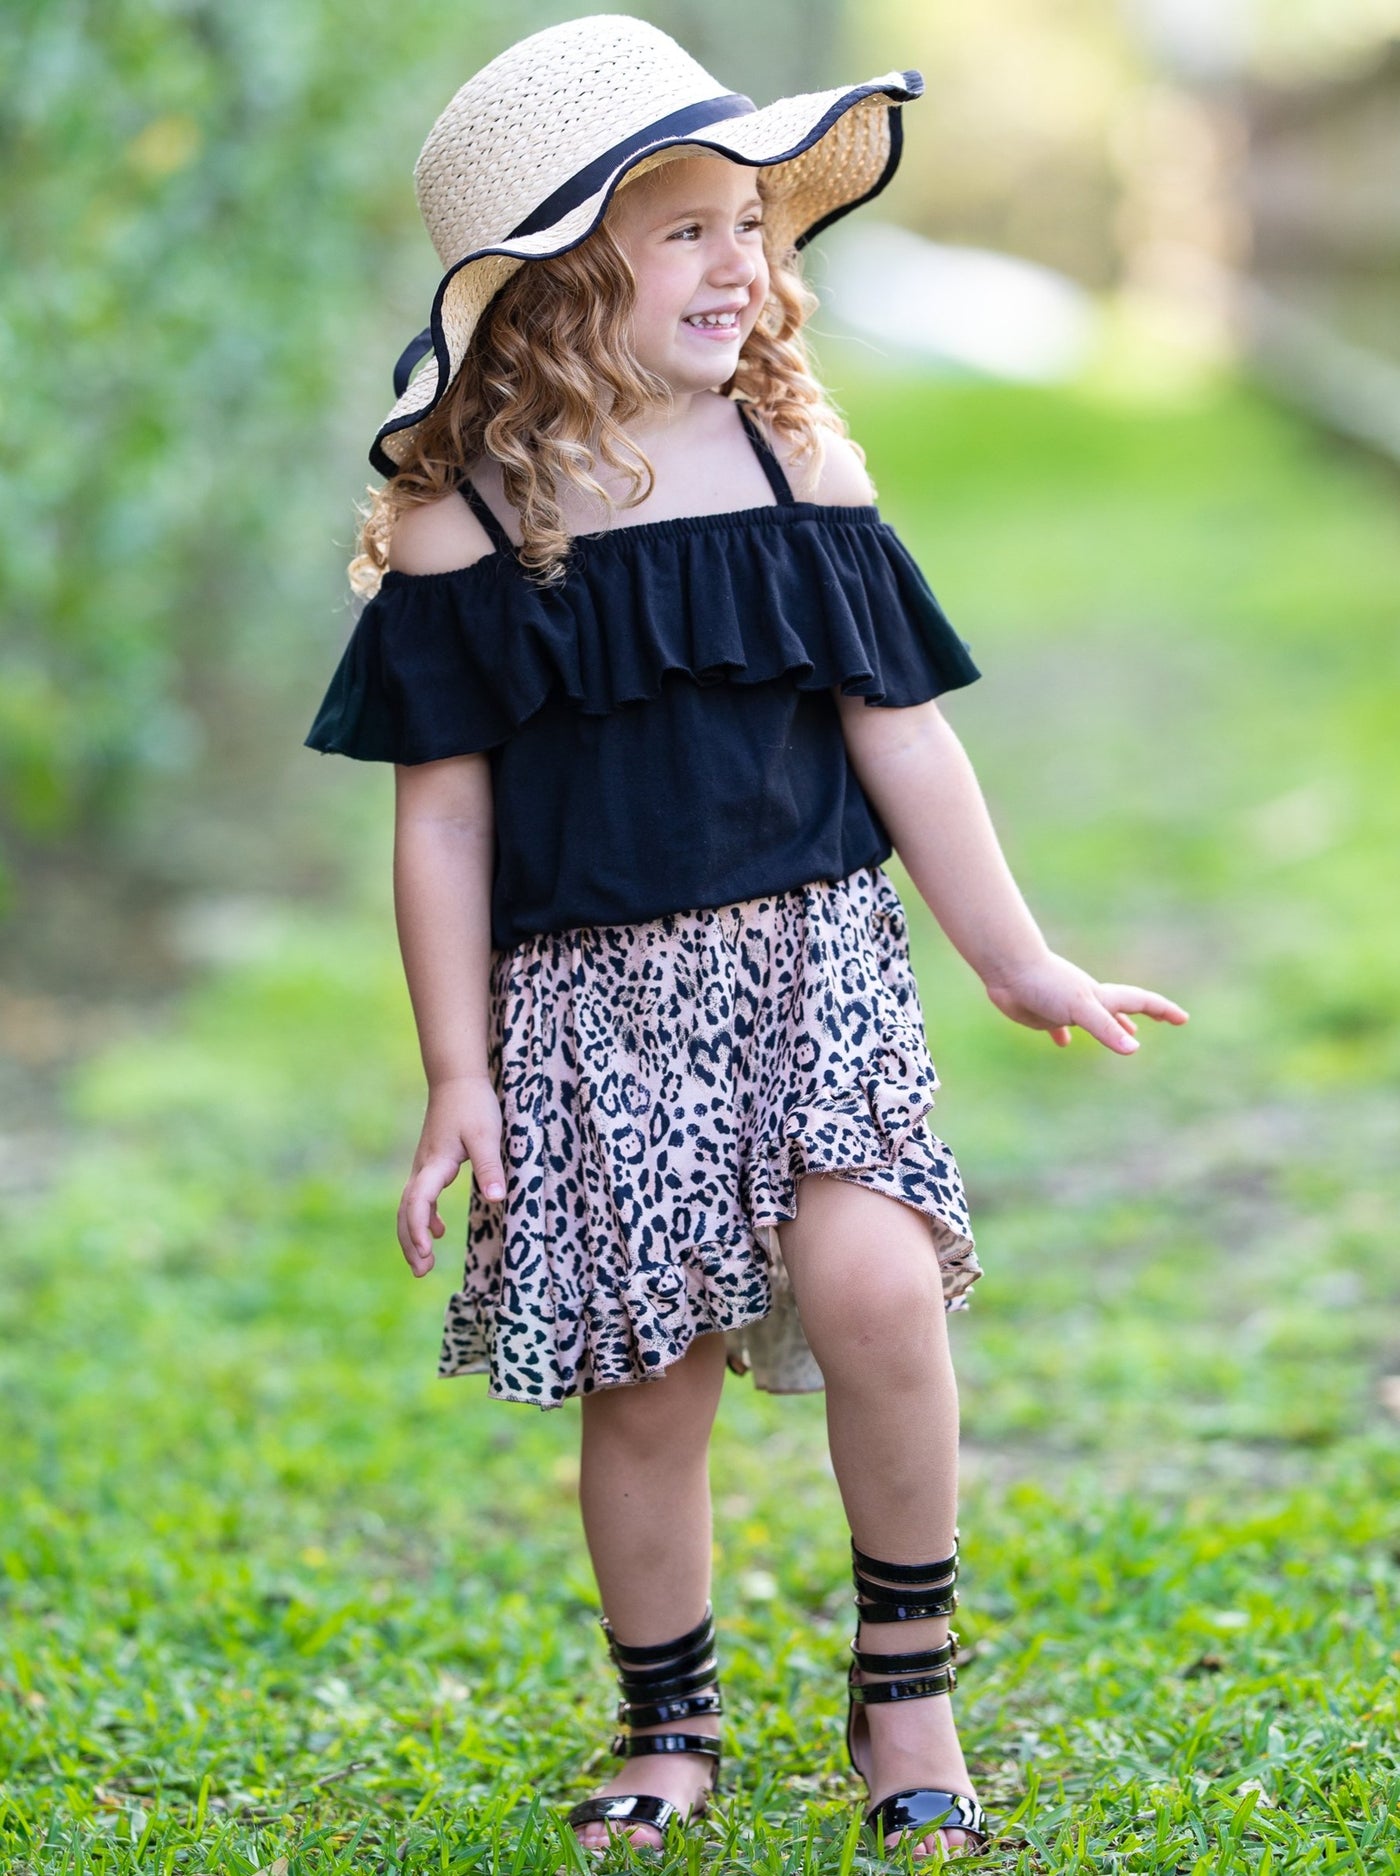 Girls Spring Black Cold Shoulder Top & Leopard Print Wrap Skirt Set